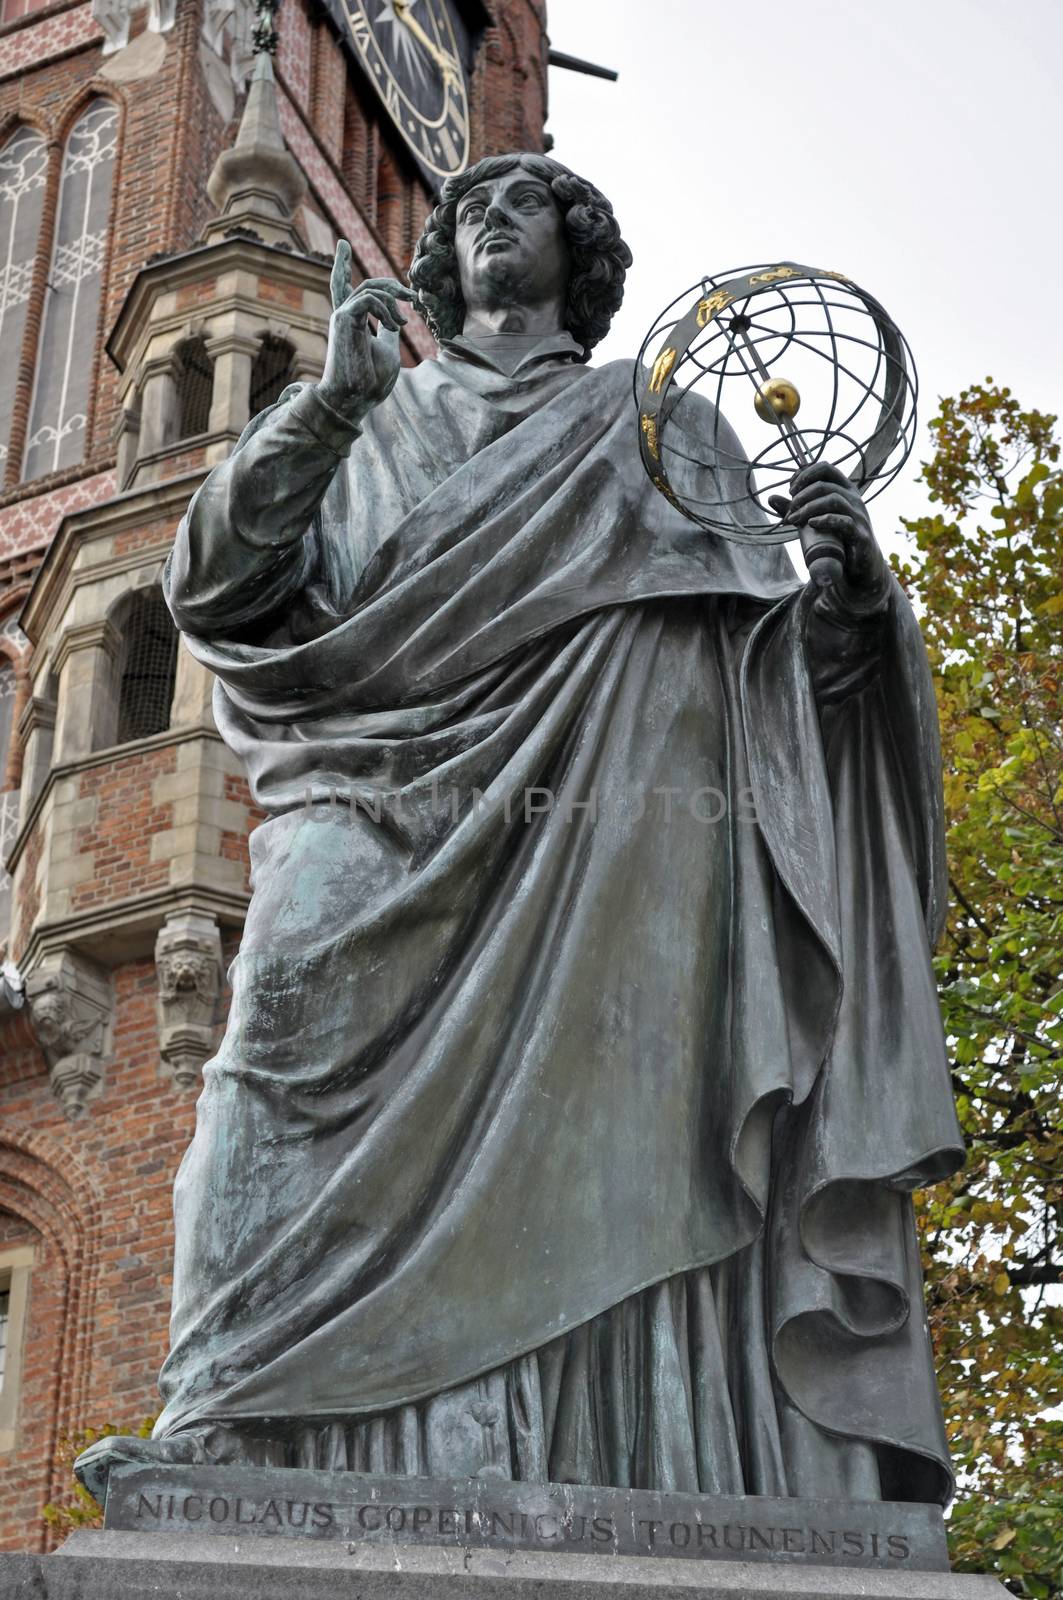 Monument to Nicolaus Copernicus in Torun, Poland.